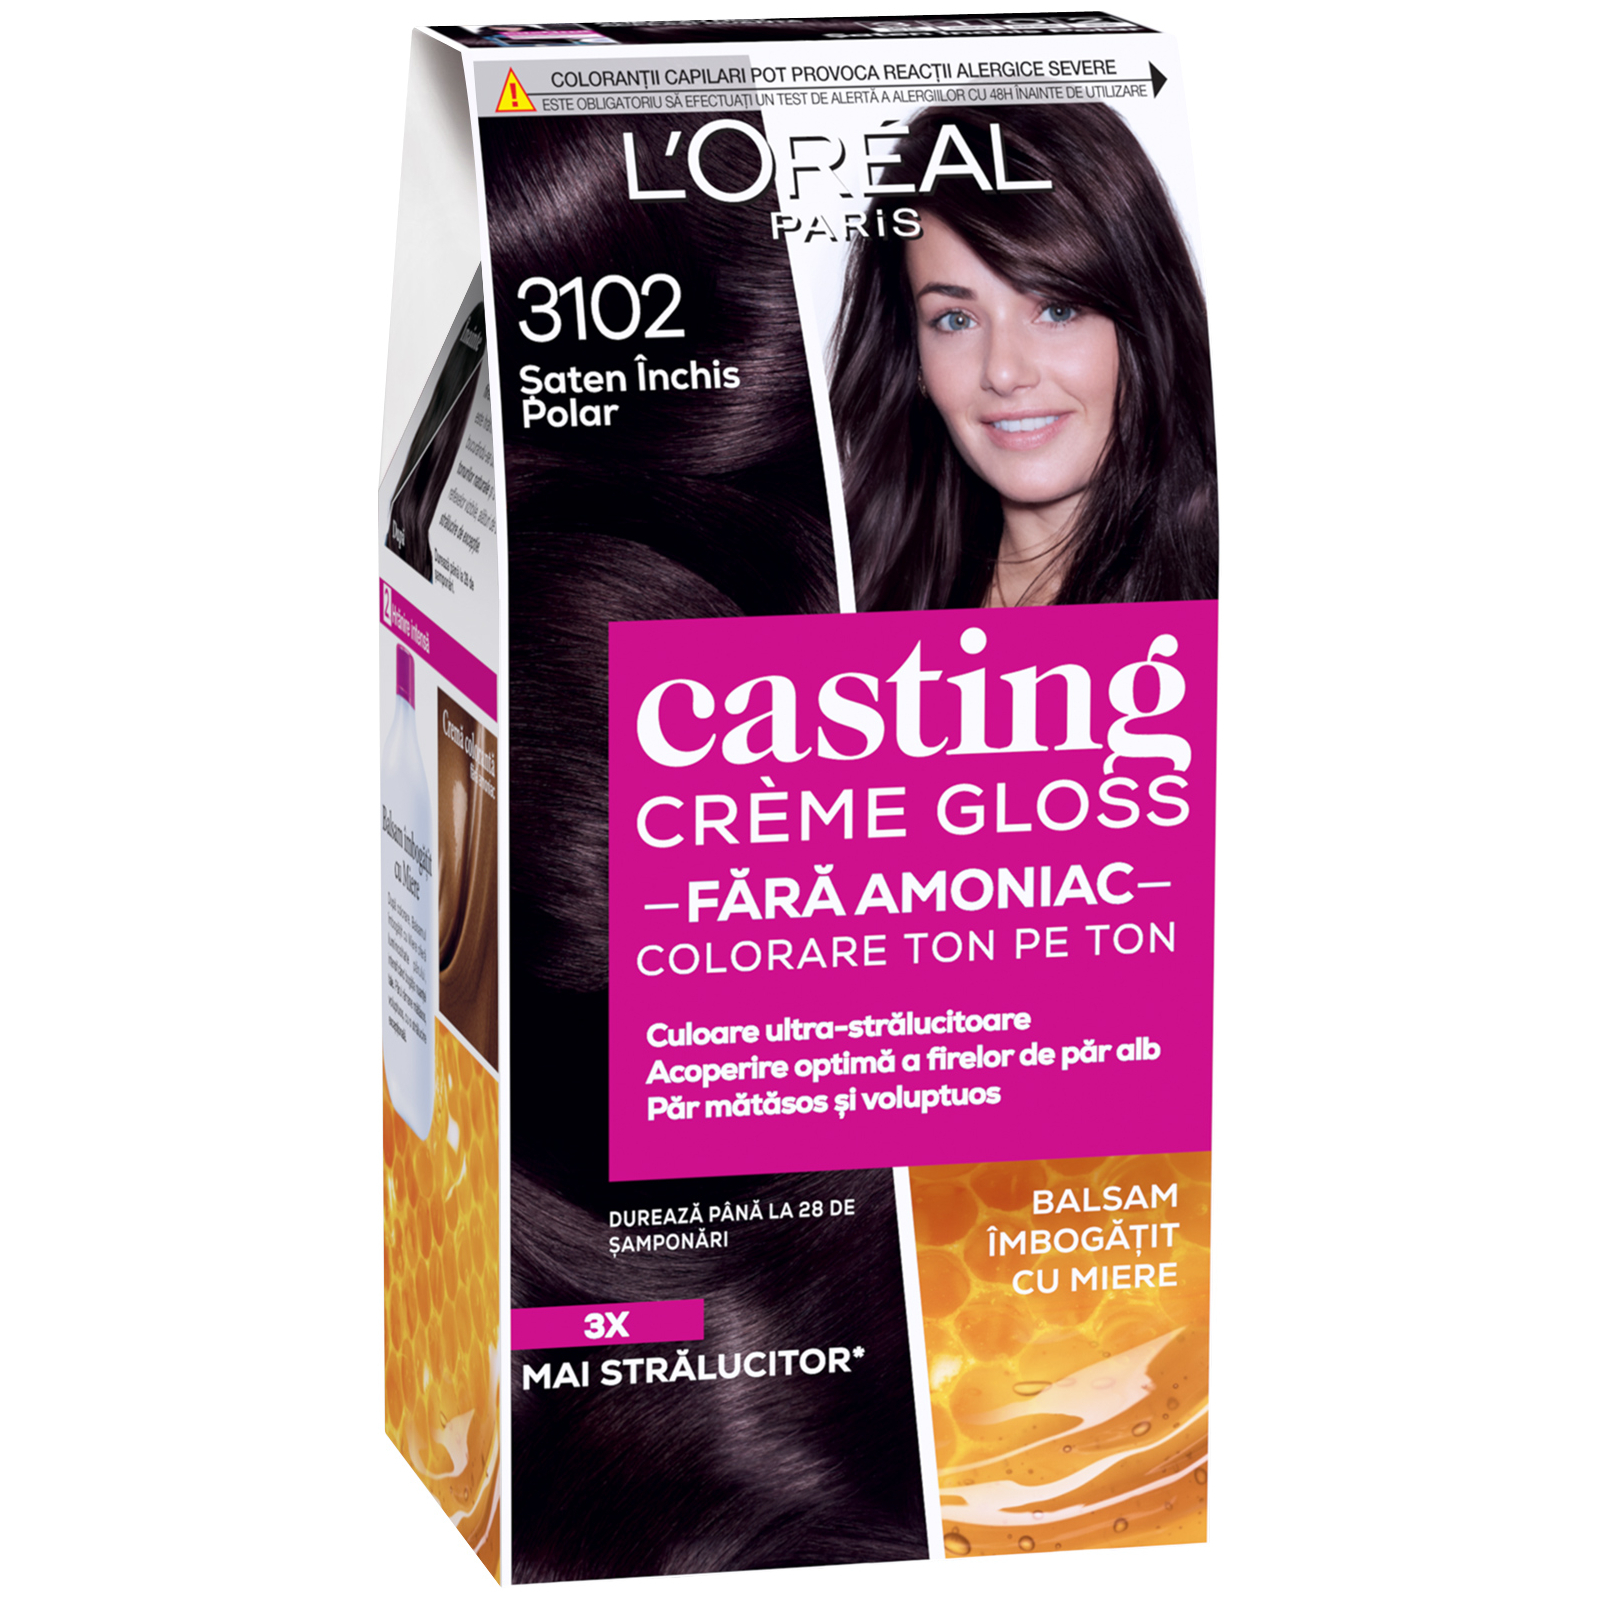 Краска для волос L'Oreal Paris Casting Creme Gloss 3102 - Холодный темно-каштановый 120 мл (3600523806928)